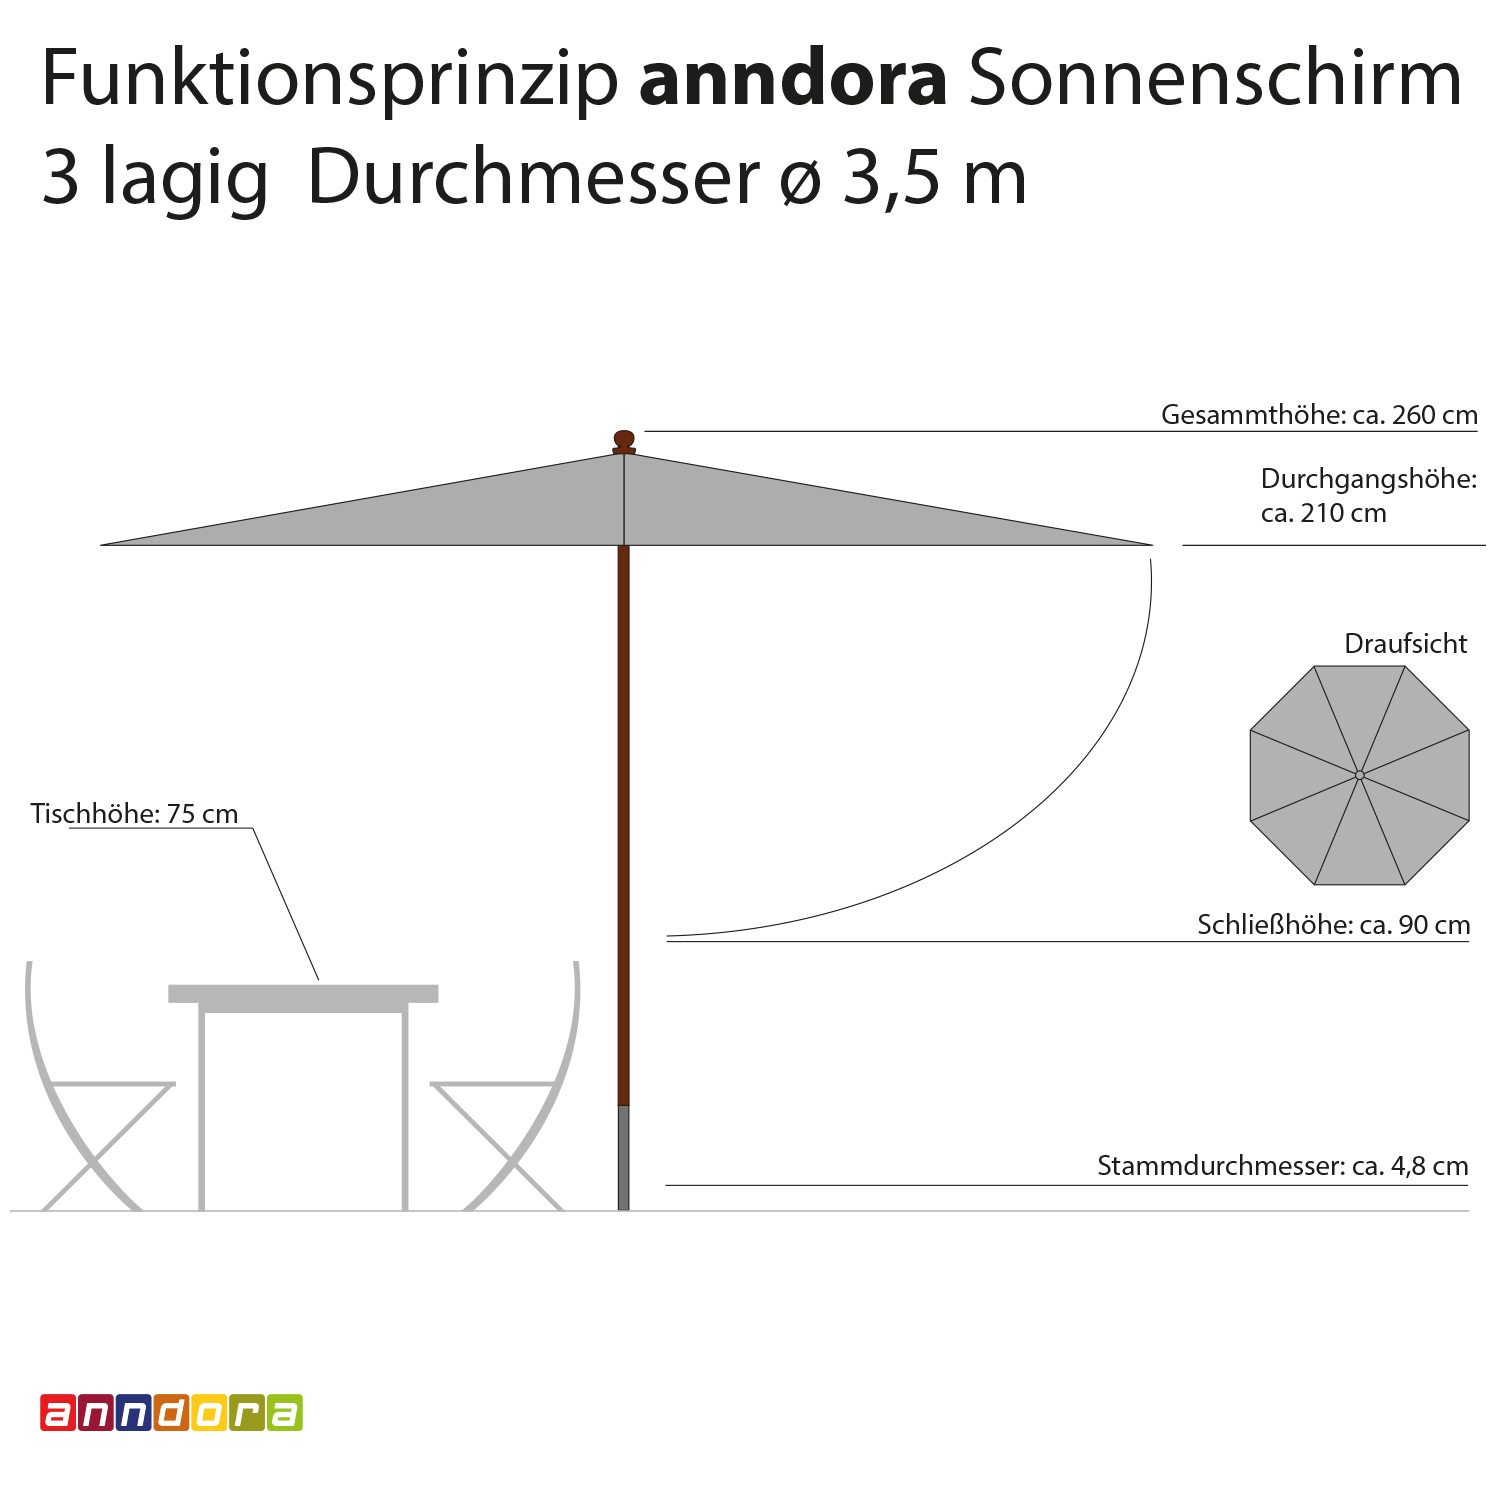 anndora Sonnenschirm 3,5m rund 3-lagig Mehrfarbig Blau UV-Schutz - 2